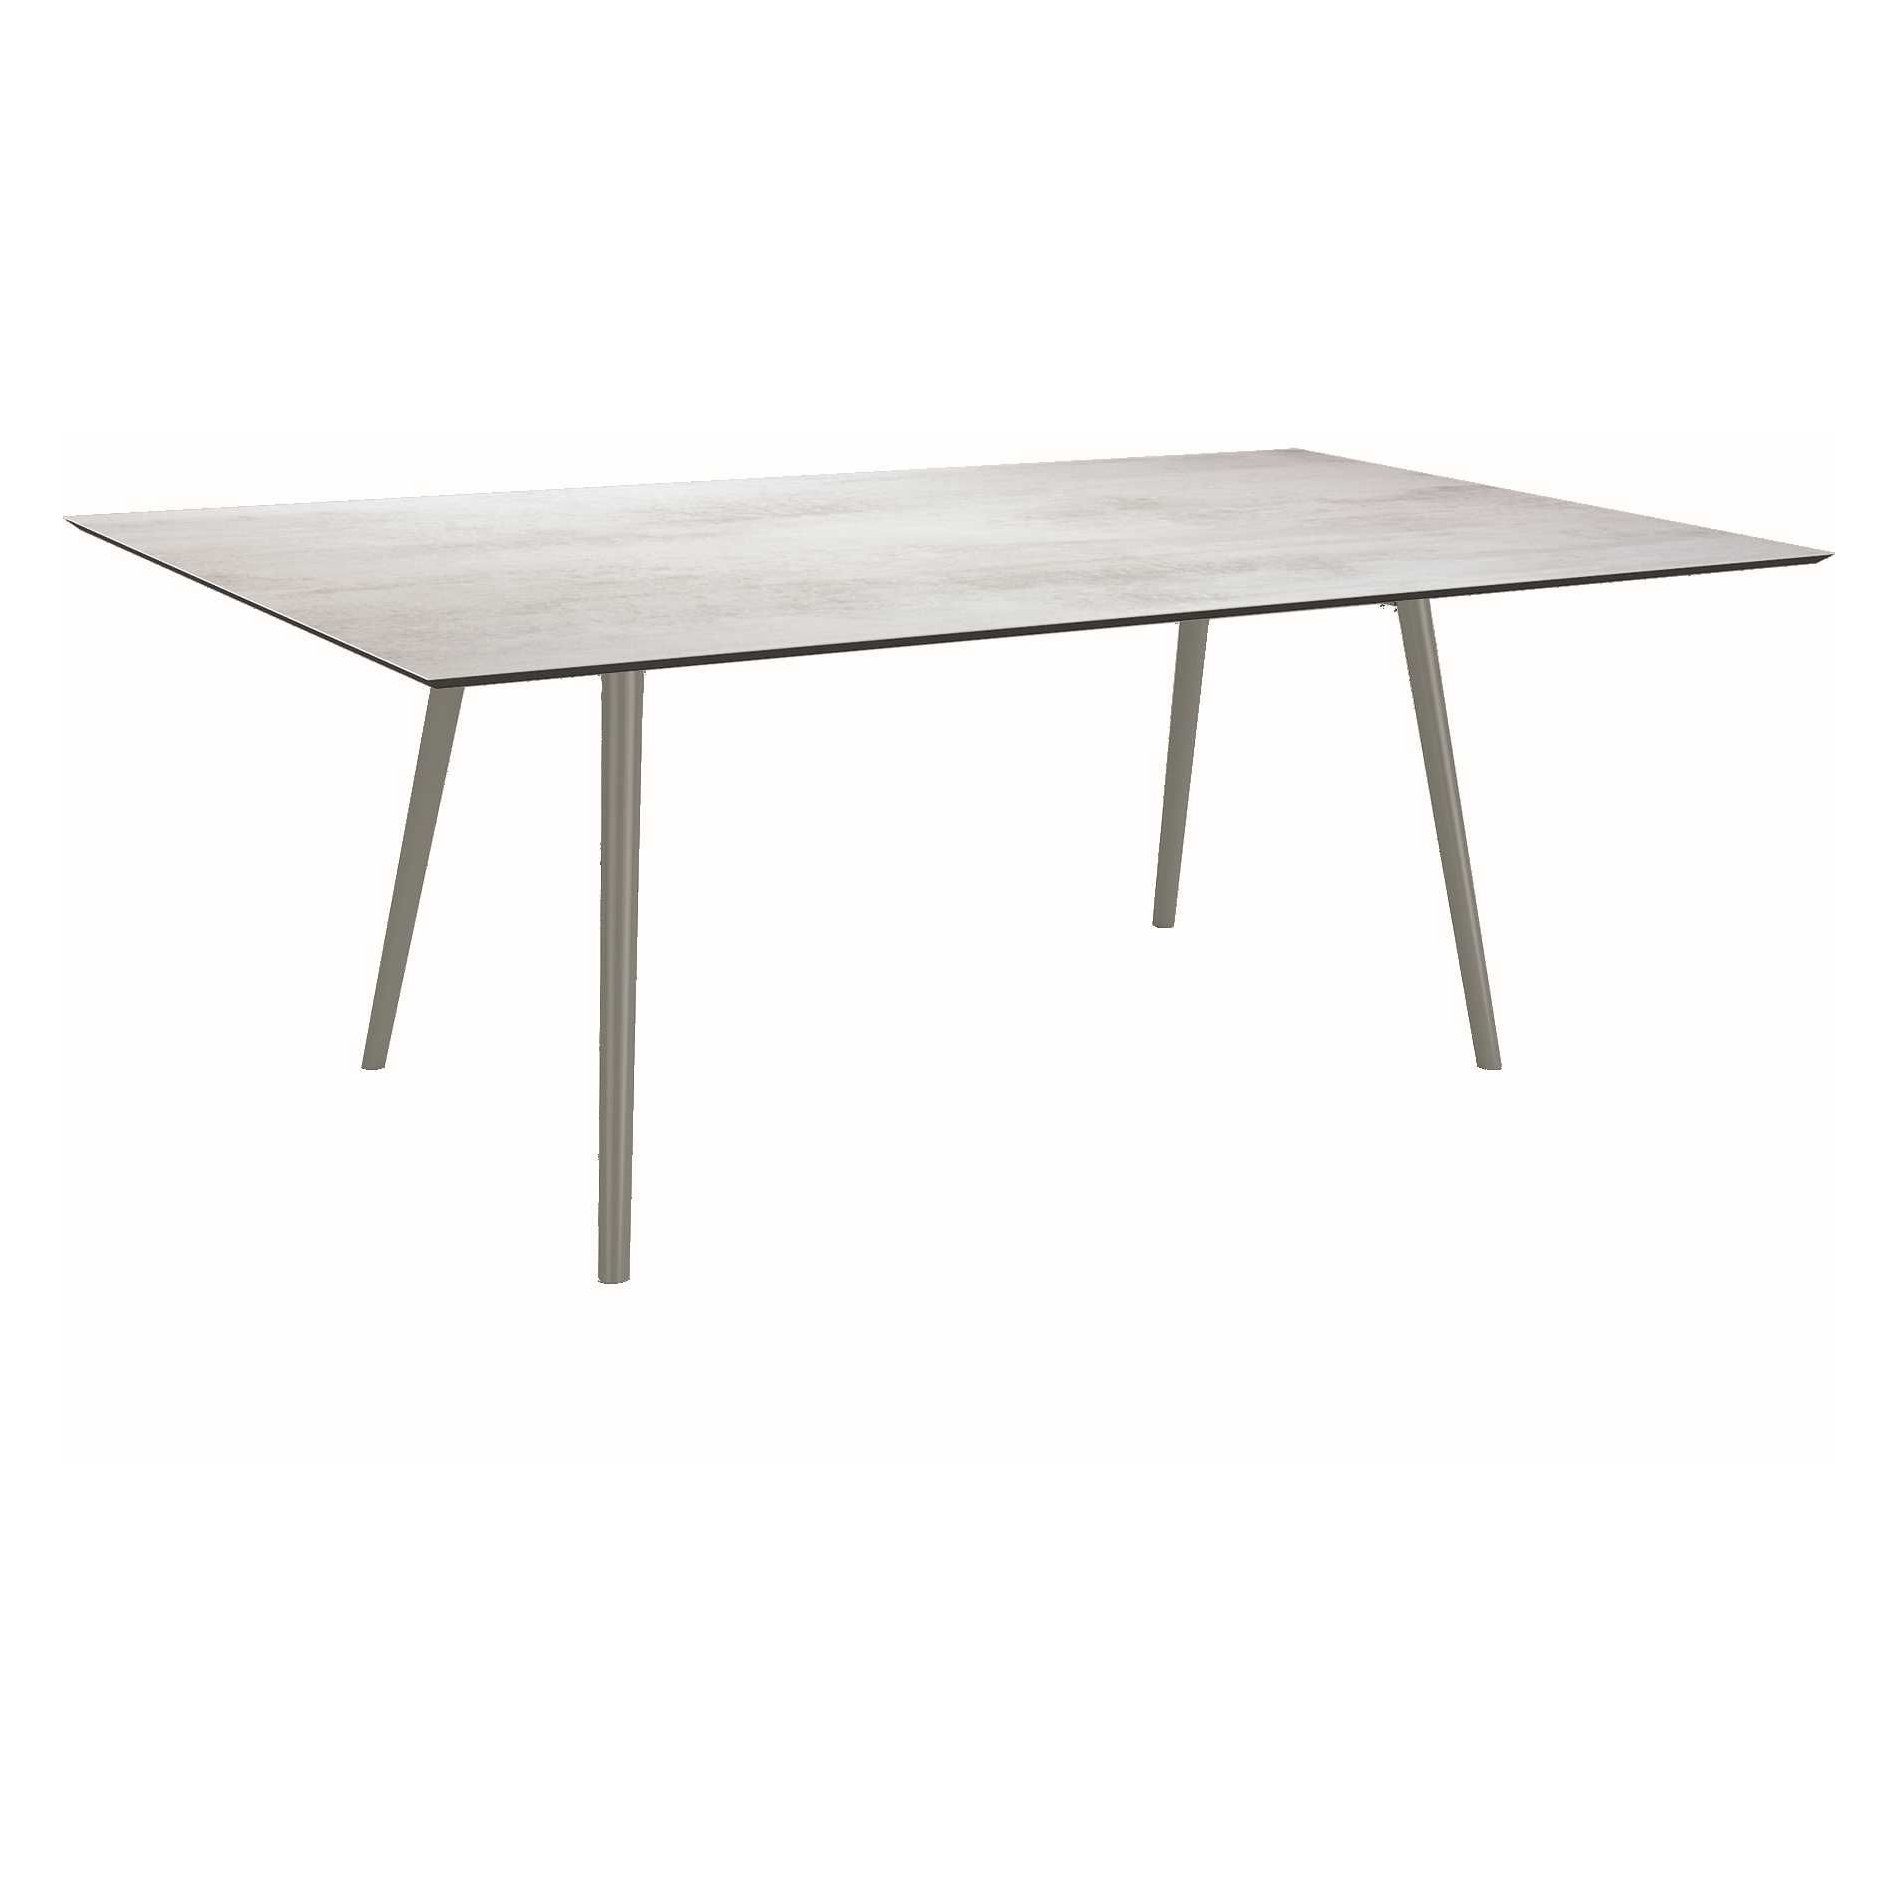 Stern Tisch "Interno", Größe 180x100cm, Alu graphit, Rundrohr, Tischplatte HPL Zement hell